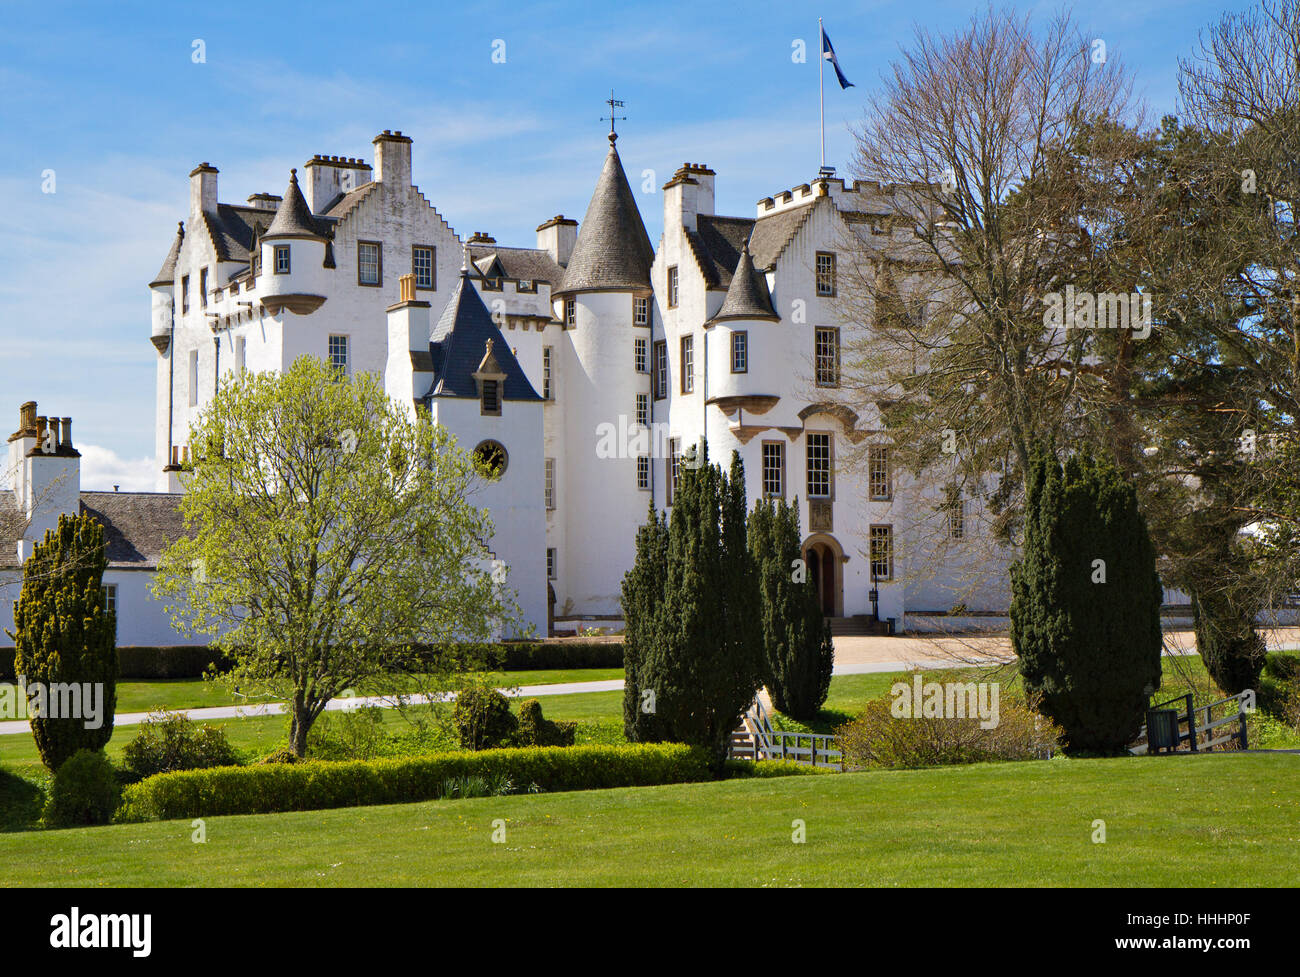 scotland, castle, exterior, white, building, chateau, garden, facade, style of Stock Photo